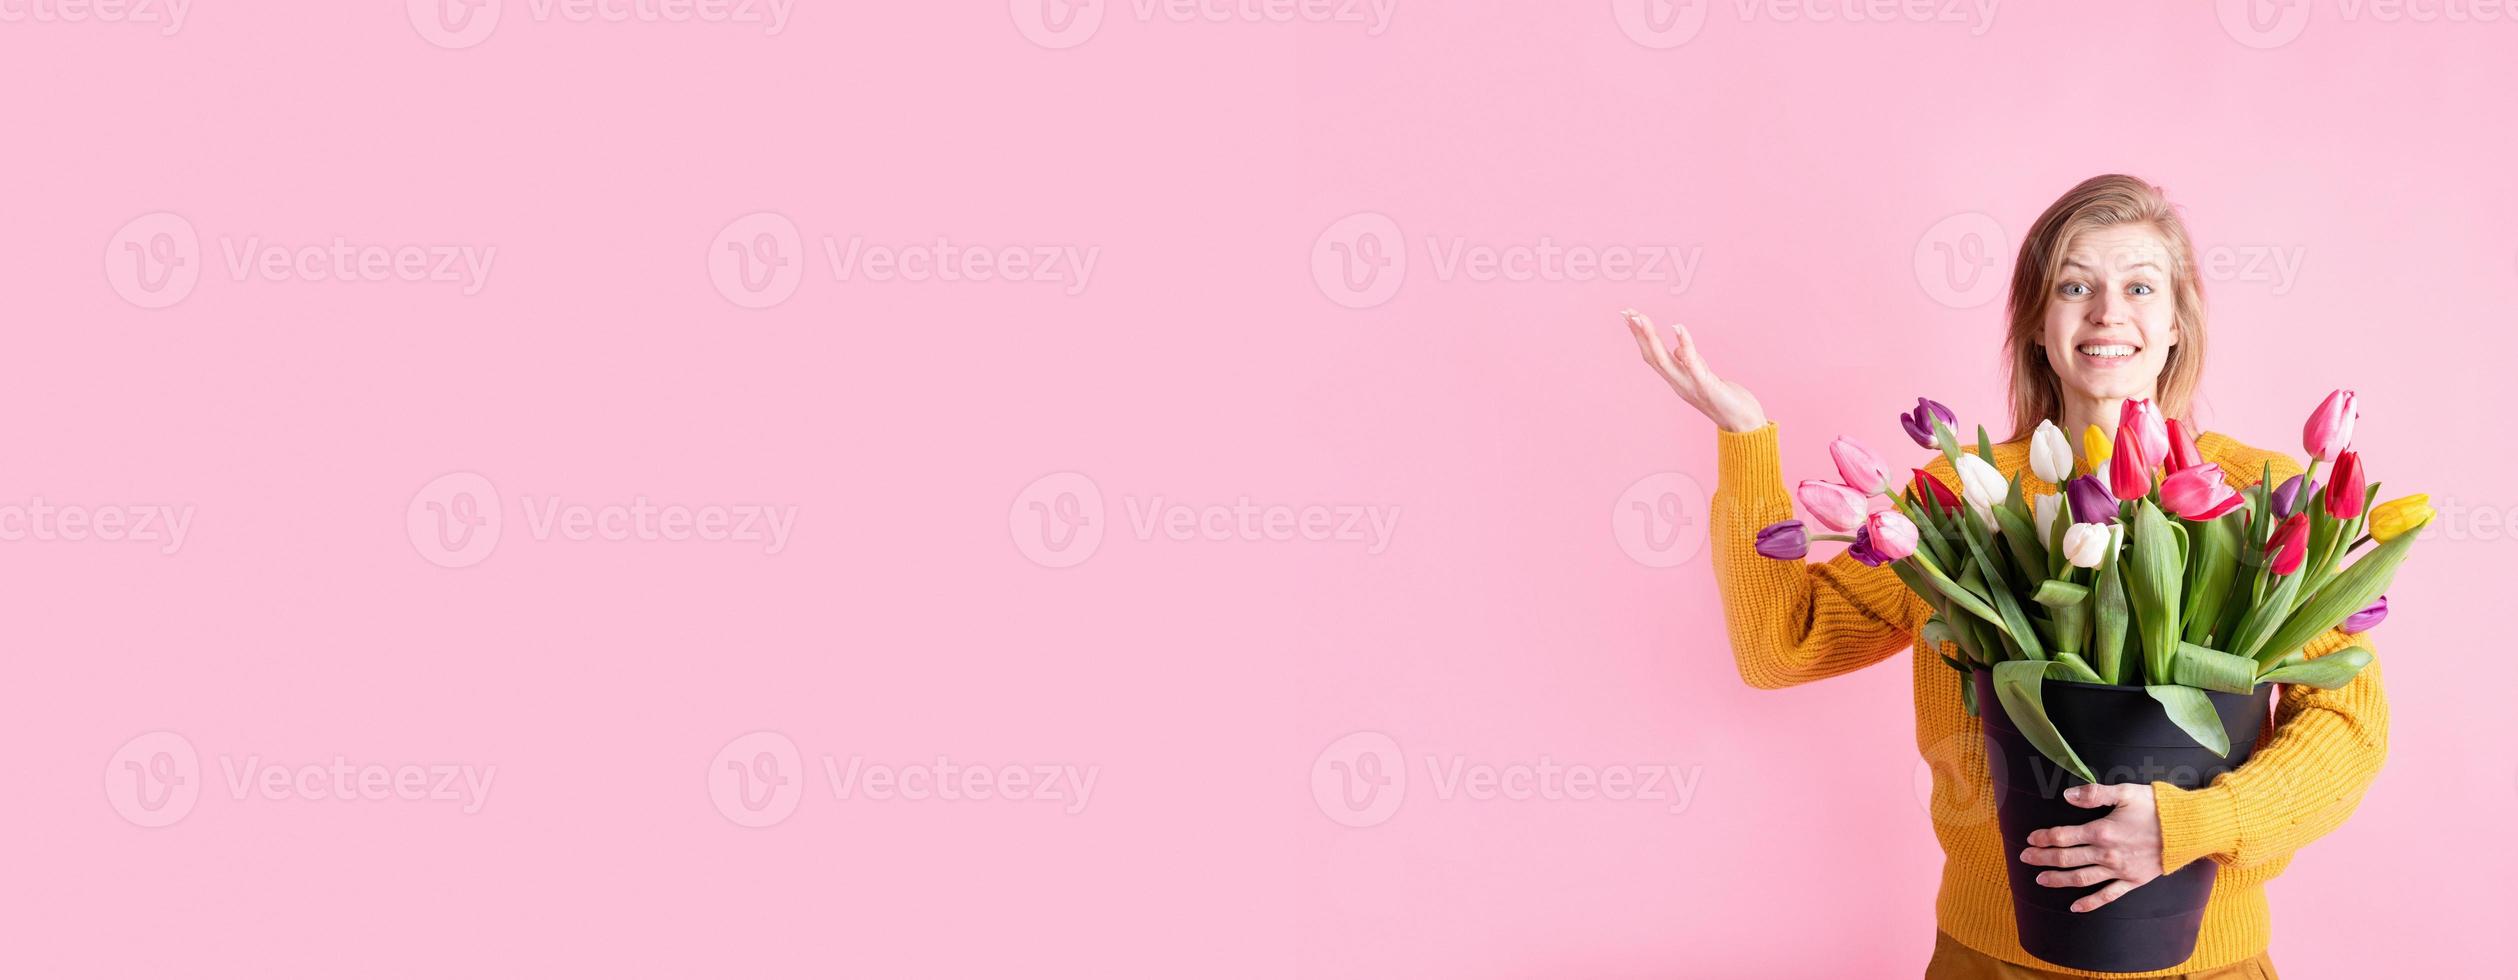 kvinna som håller en hink med färska tulpaner som isoleras på rosa färger foto